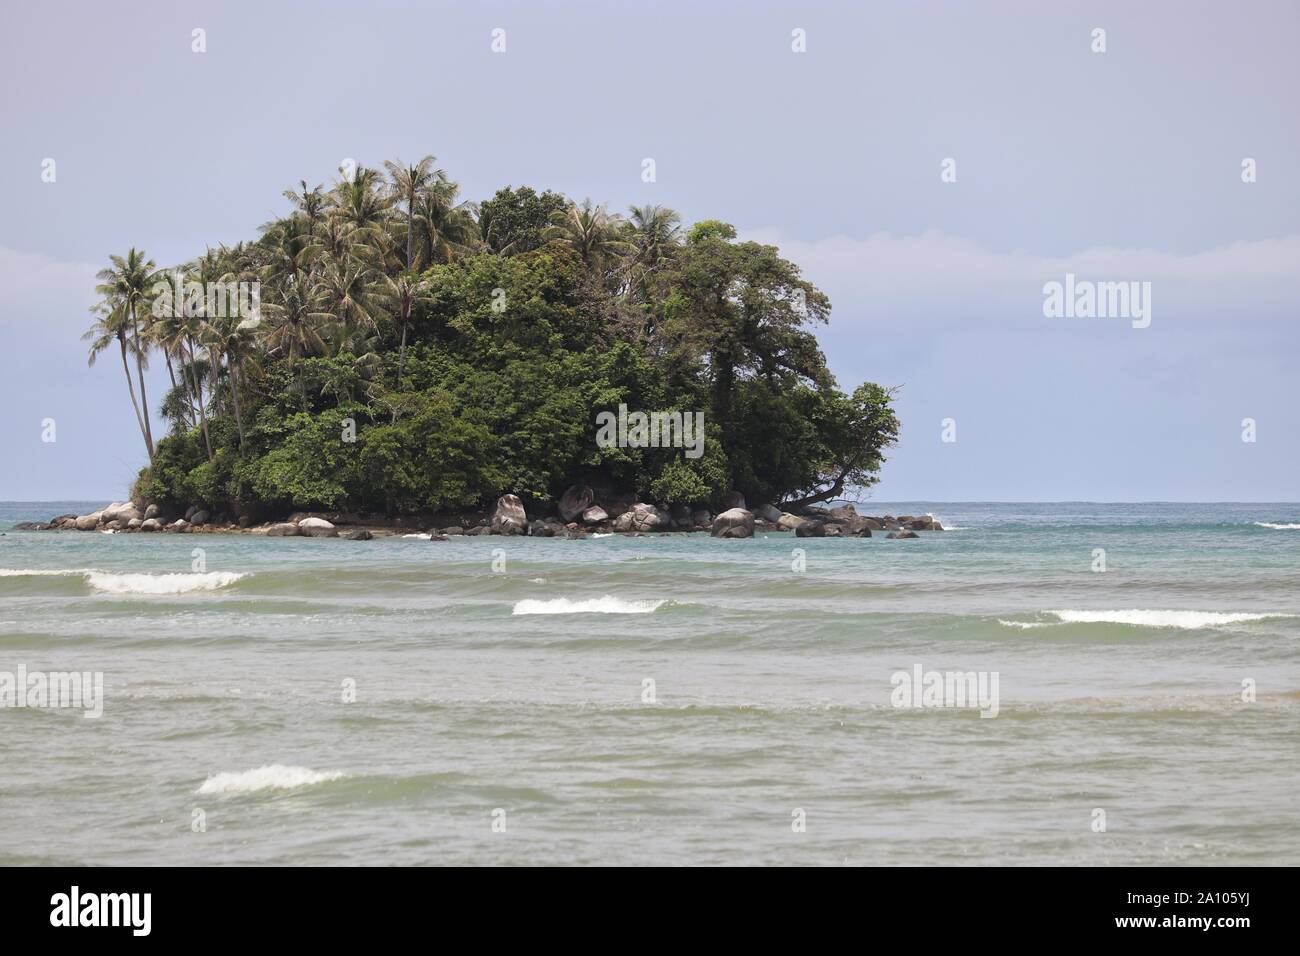 Île tropicale avec palmiers dans un océan, vue pittoresque de l'azur de l'eau avec les vagues. Seascape colorés Banque D'Images